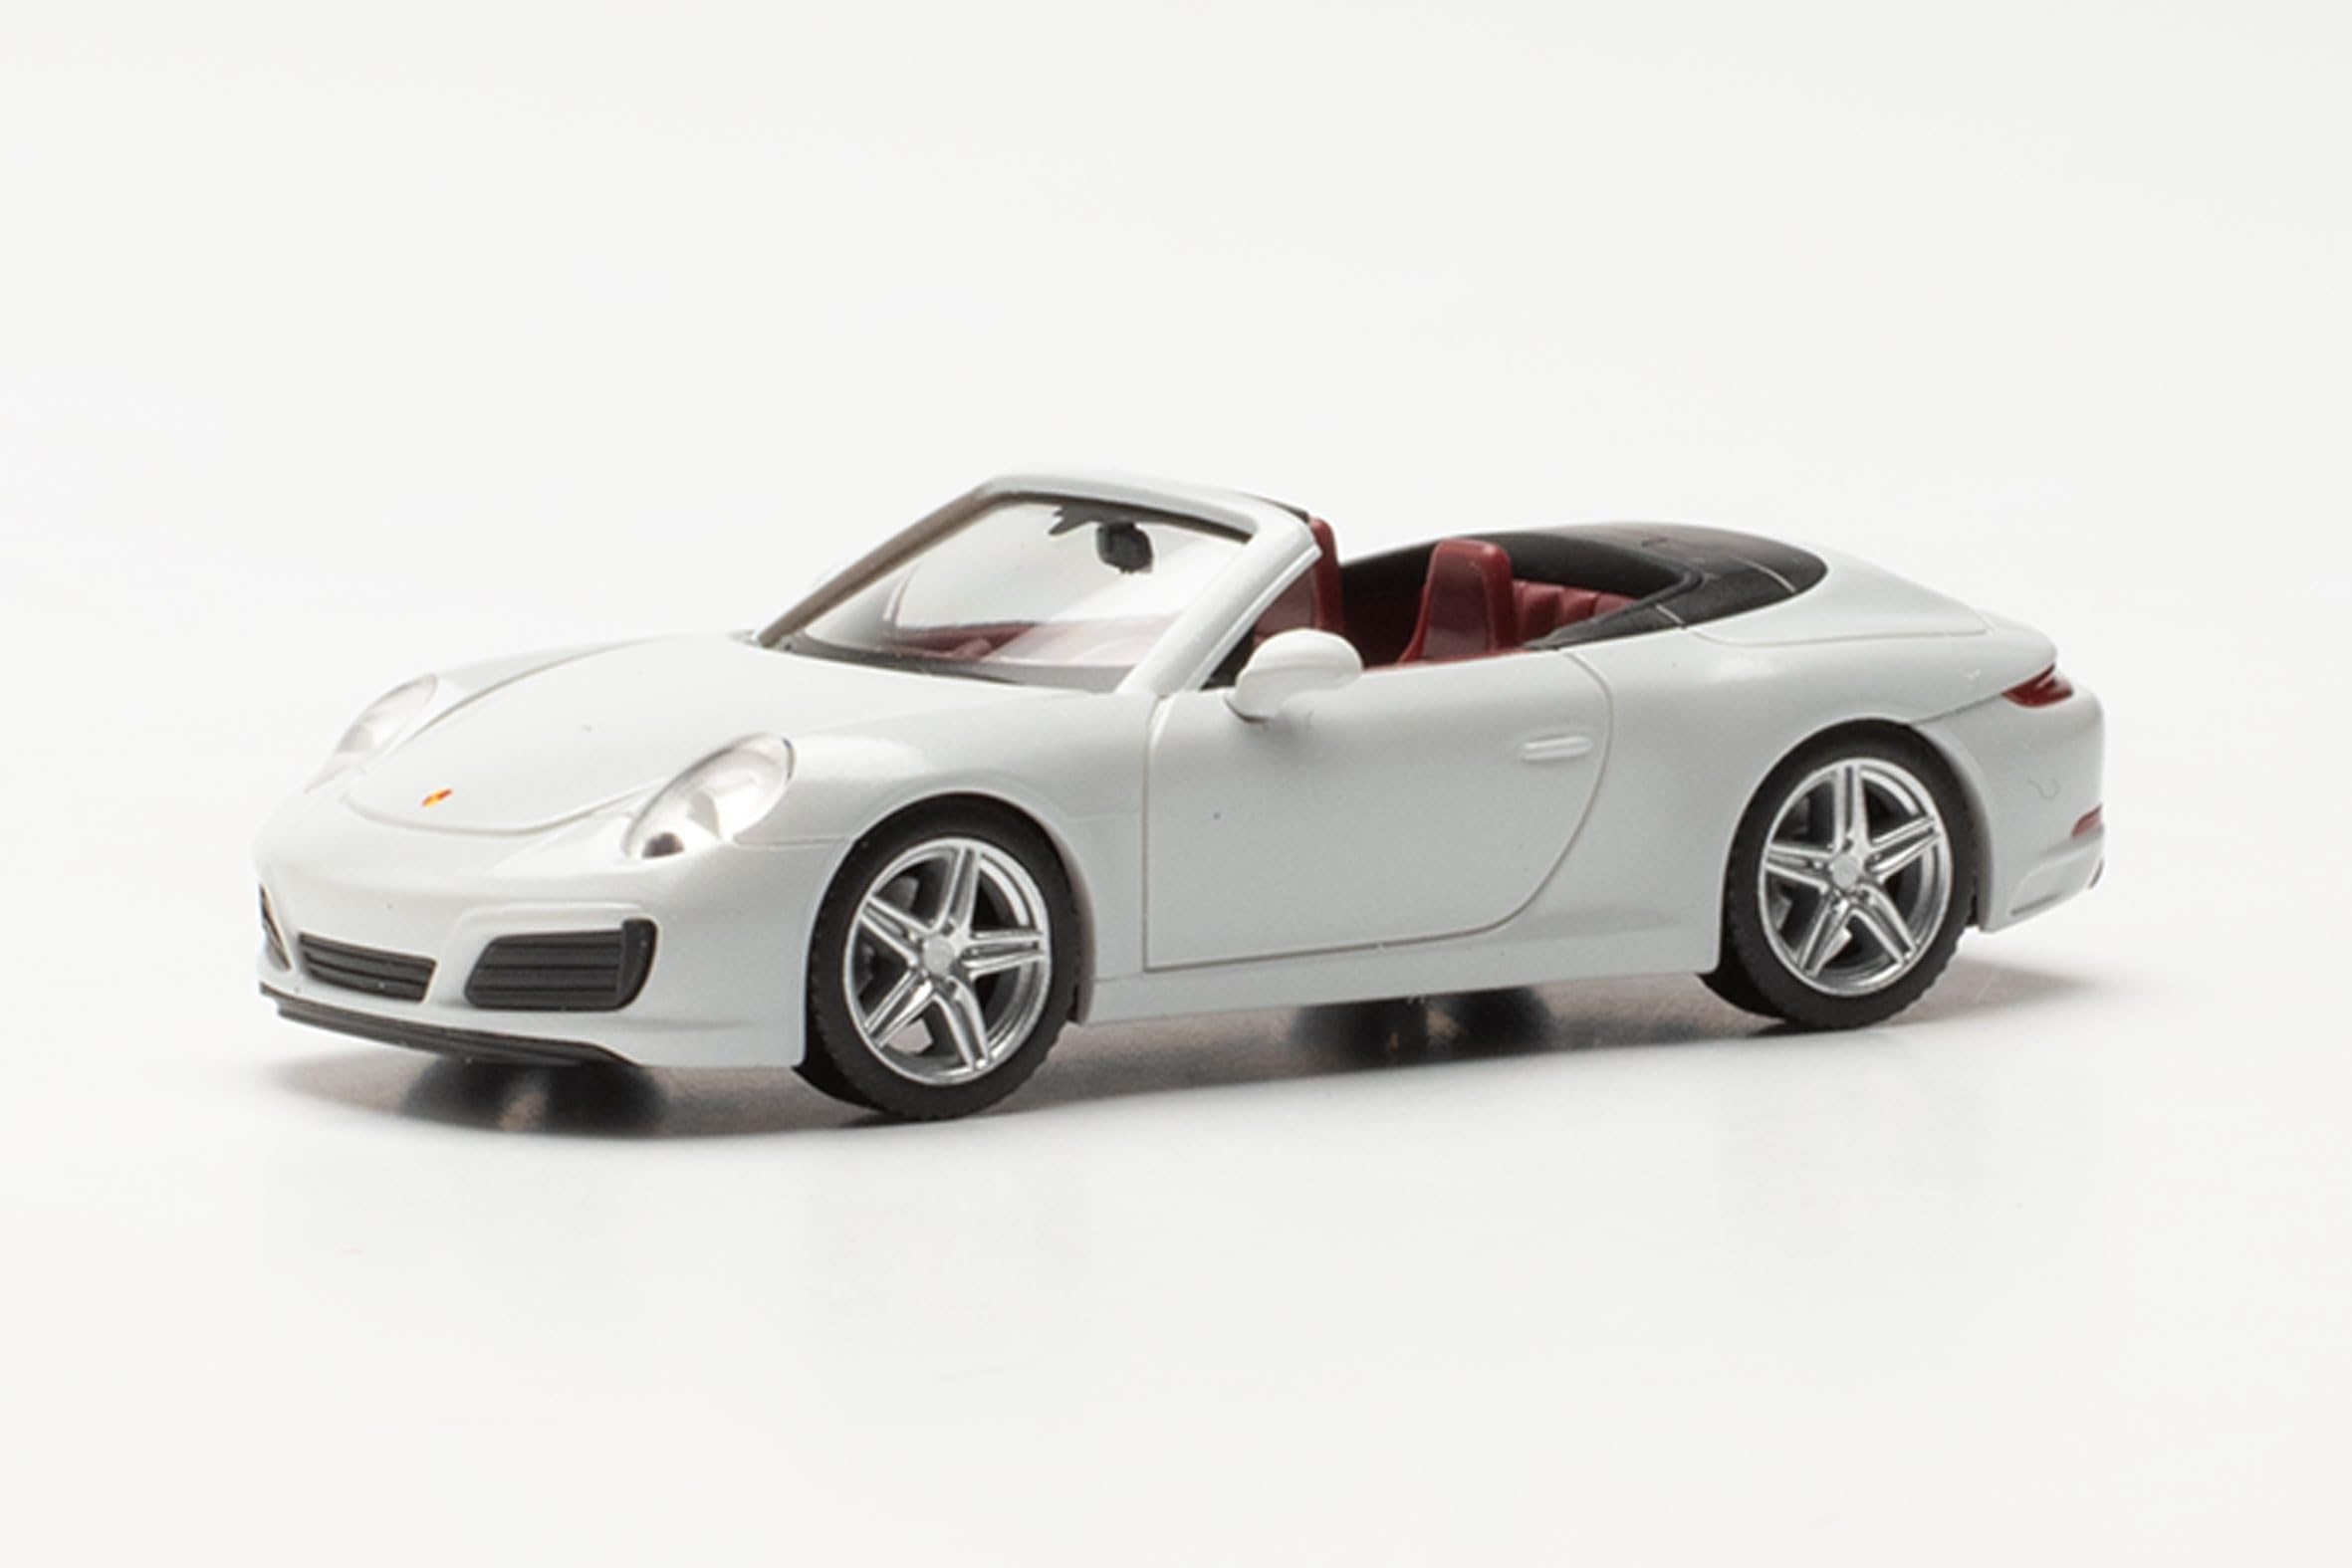 Herpa Modellauto Porsche 911 Carrera 2 Cabrio, carraraweiß metallic, Miniatur im Maßstab 1:87, Sammlerstück, Made in Germany, Modell aus Kunststoff